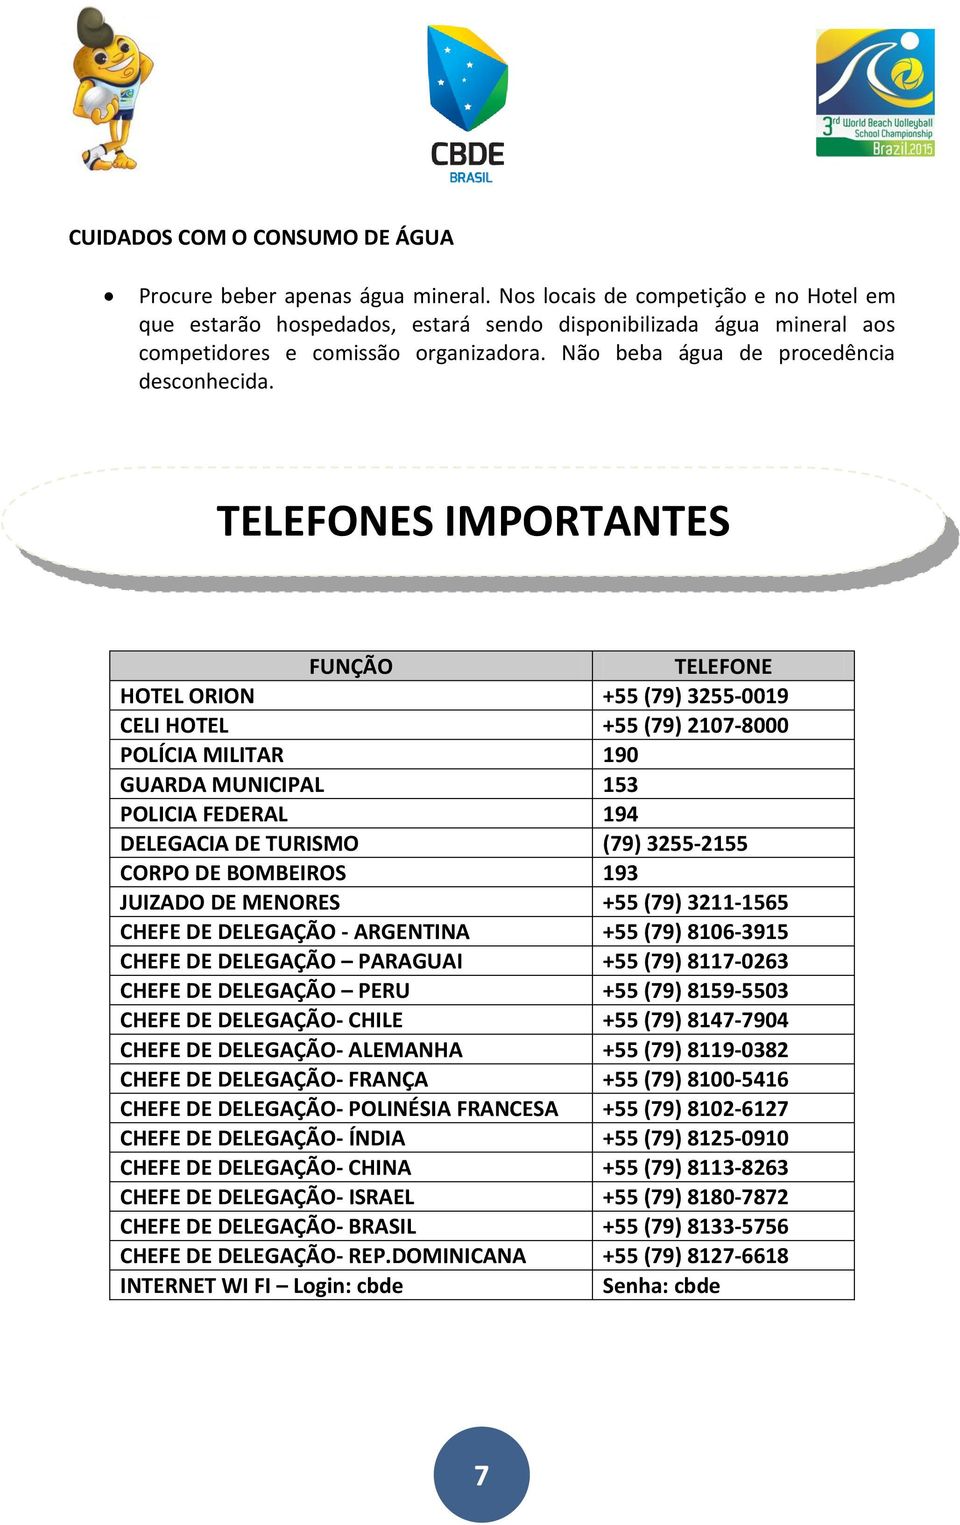 TELEFONES IMPORTANTES FUNÇÃO TELEFONE HOTEL ORION +55 (79) 3255-0019 CELI HOTEL +55 (79) 2107-8000 POLÍCIA MILITAR 190 GUARDA MUNICIPAL 153 POLICIA FEDERAL 194 DELEGACIA DE TURISMO (79) 3255-2155